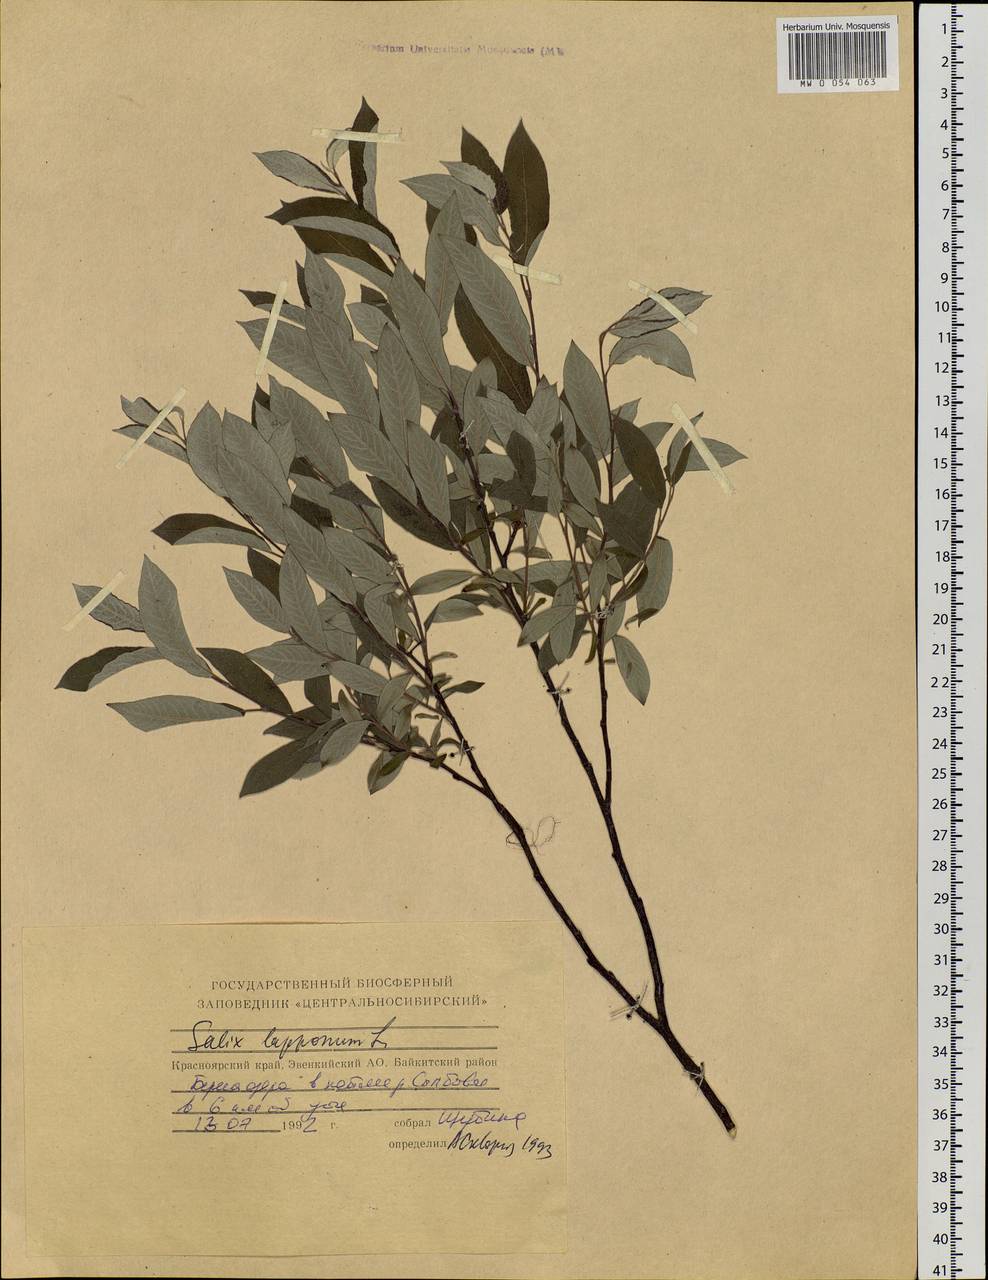 Salix lapponum, Siberia, Central Siberia (S3) (Russia)